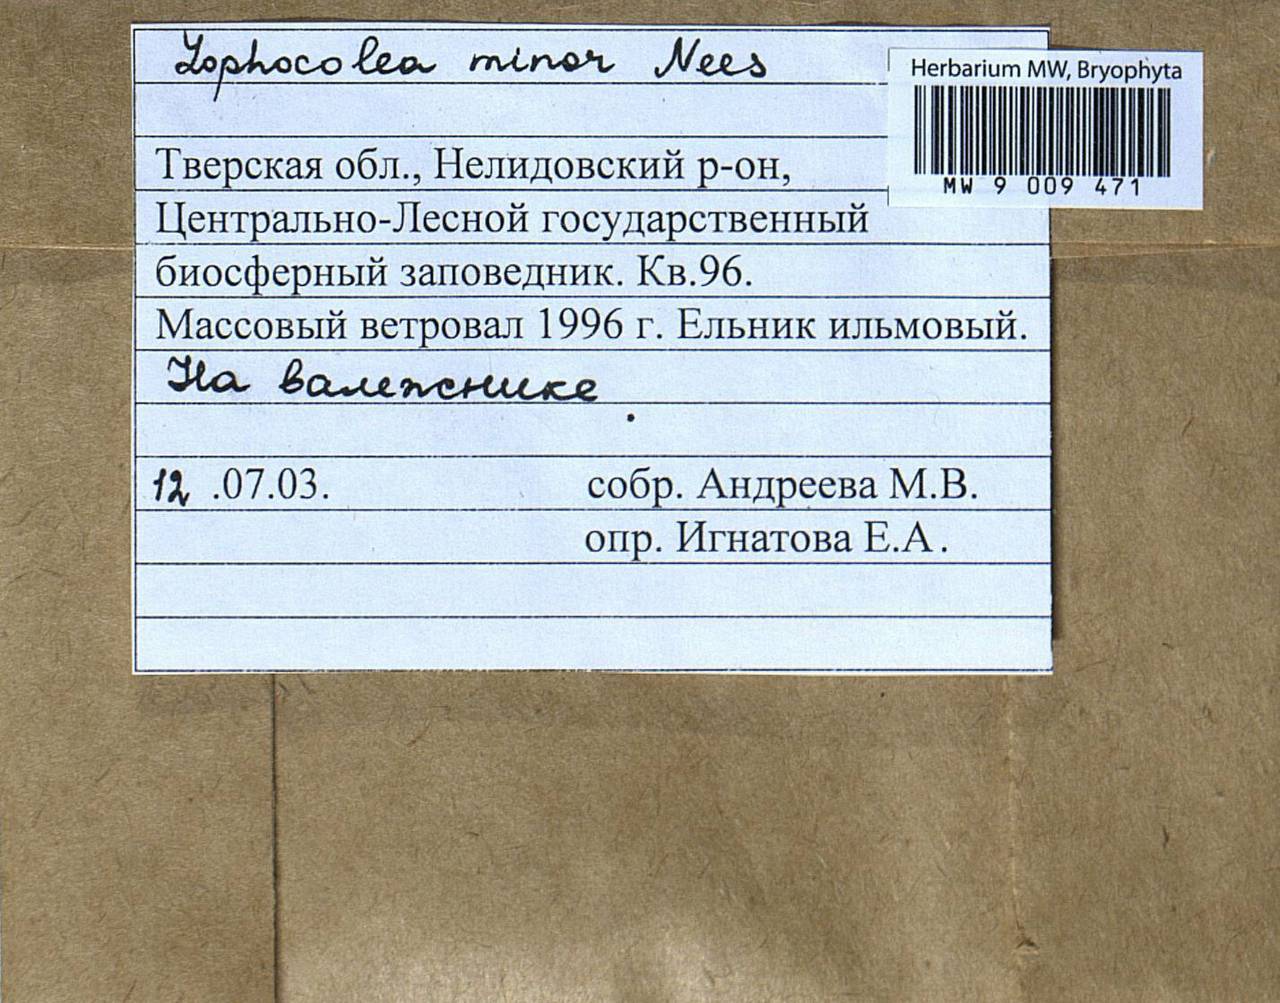 Lophocolea minor Nees, Bryophytes, Bryophytes - Middle Russia (B6) (Russia)